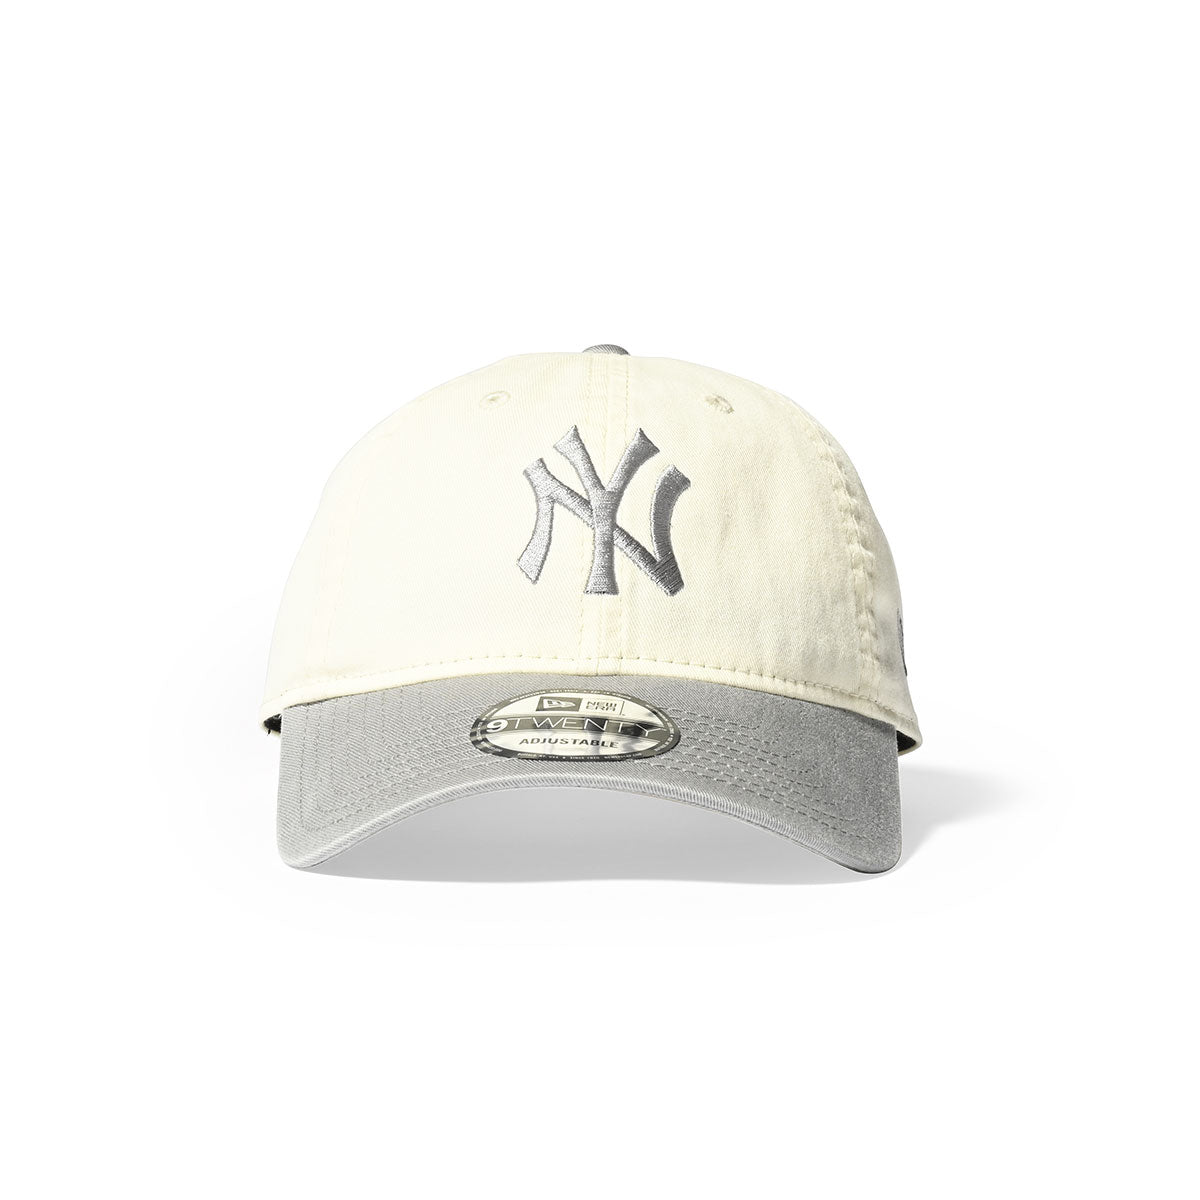 NEW ERA New York Yankees - 9TWENTY CROME WHITE GRAY【14353292】